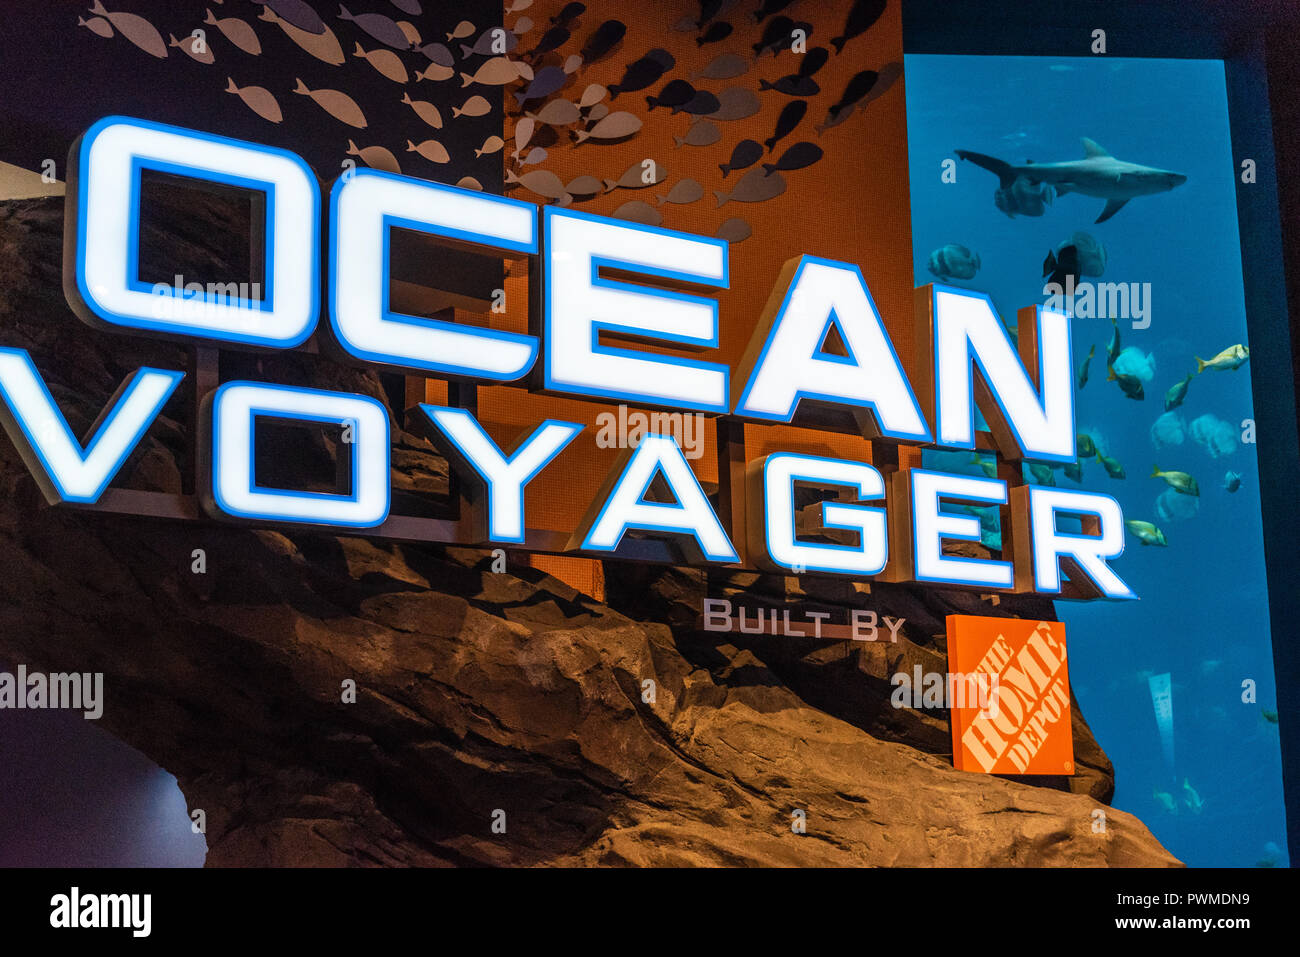 Il Georgia Aquarium's Ocean Voyager presentano, costruito da Home Depot, è il più grande coperta habitat acquatici in tutto il mondo. (Atlanta, GA, Stati Uniti d'America) Foto Stock